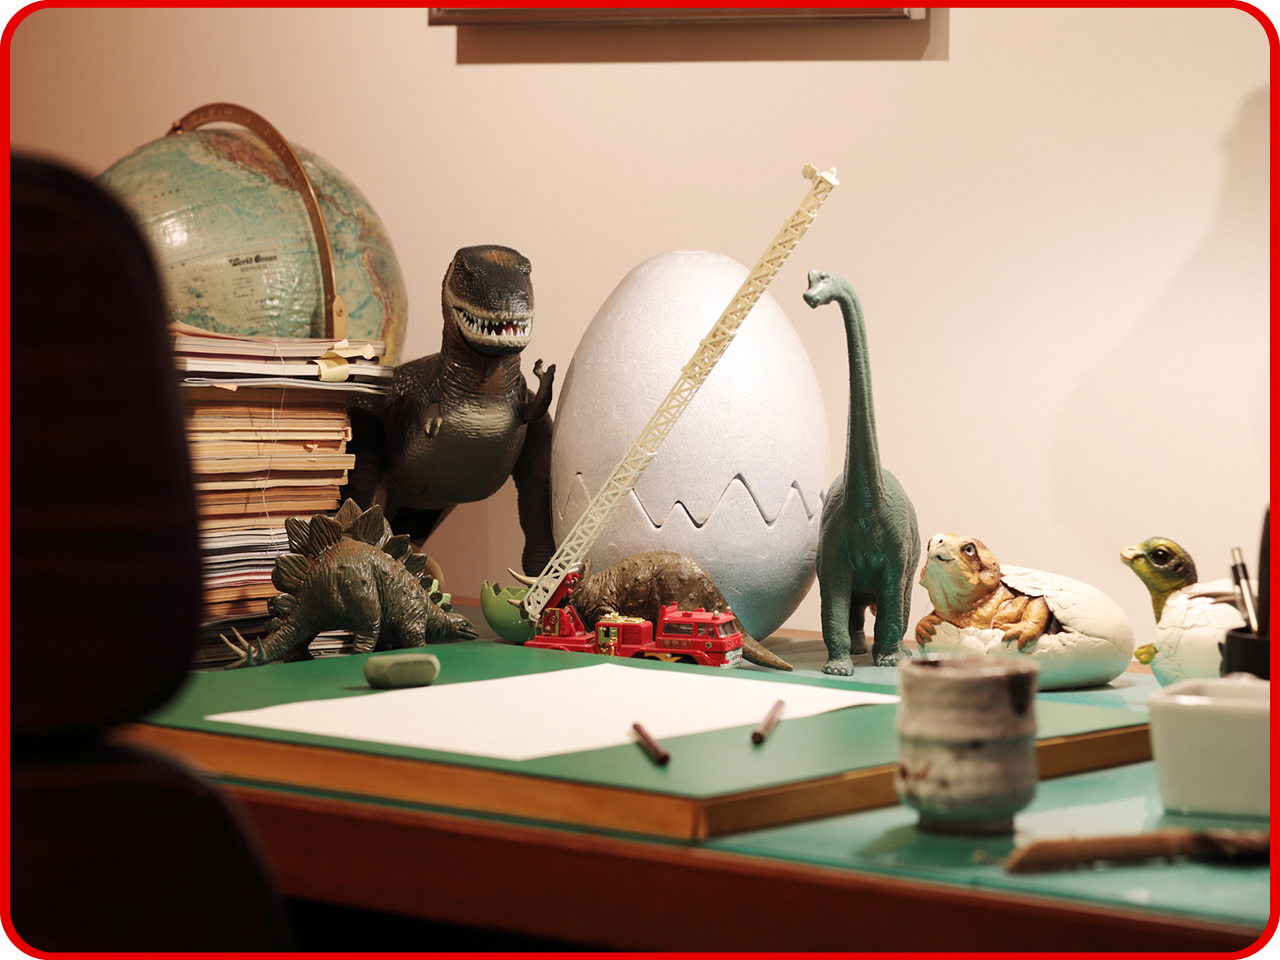 ▲机の上には恐竜のフィギュアが。
